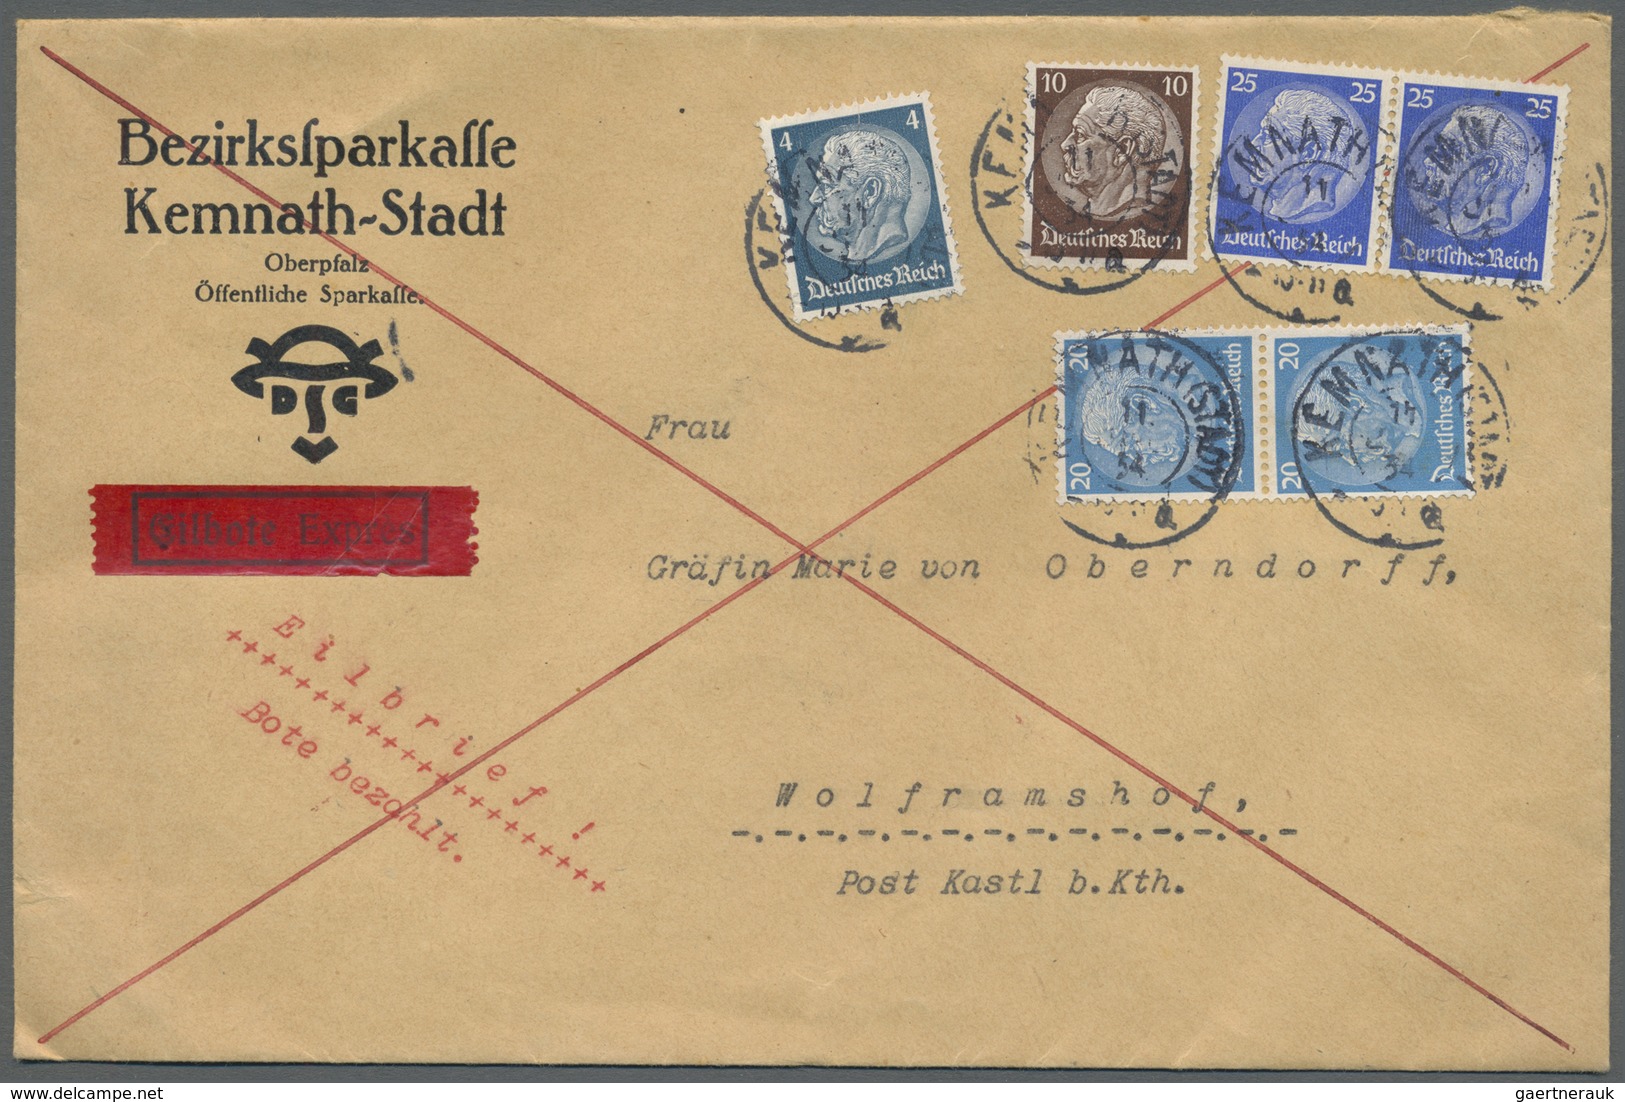 Br Deutsches Reich - 3. Reich: 1934, Eil-Doppelbrief An Die Gräfin Marie Von Oberndorff Nach Wolframsho - Nuovi